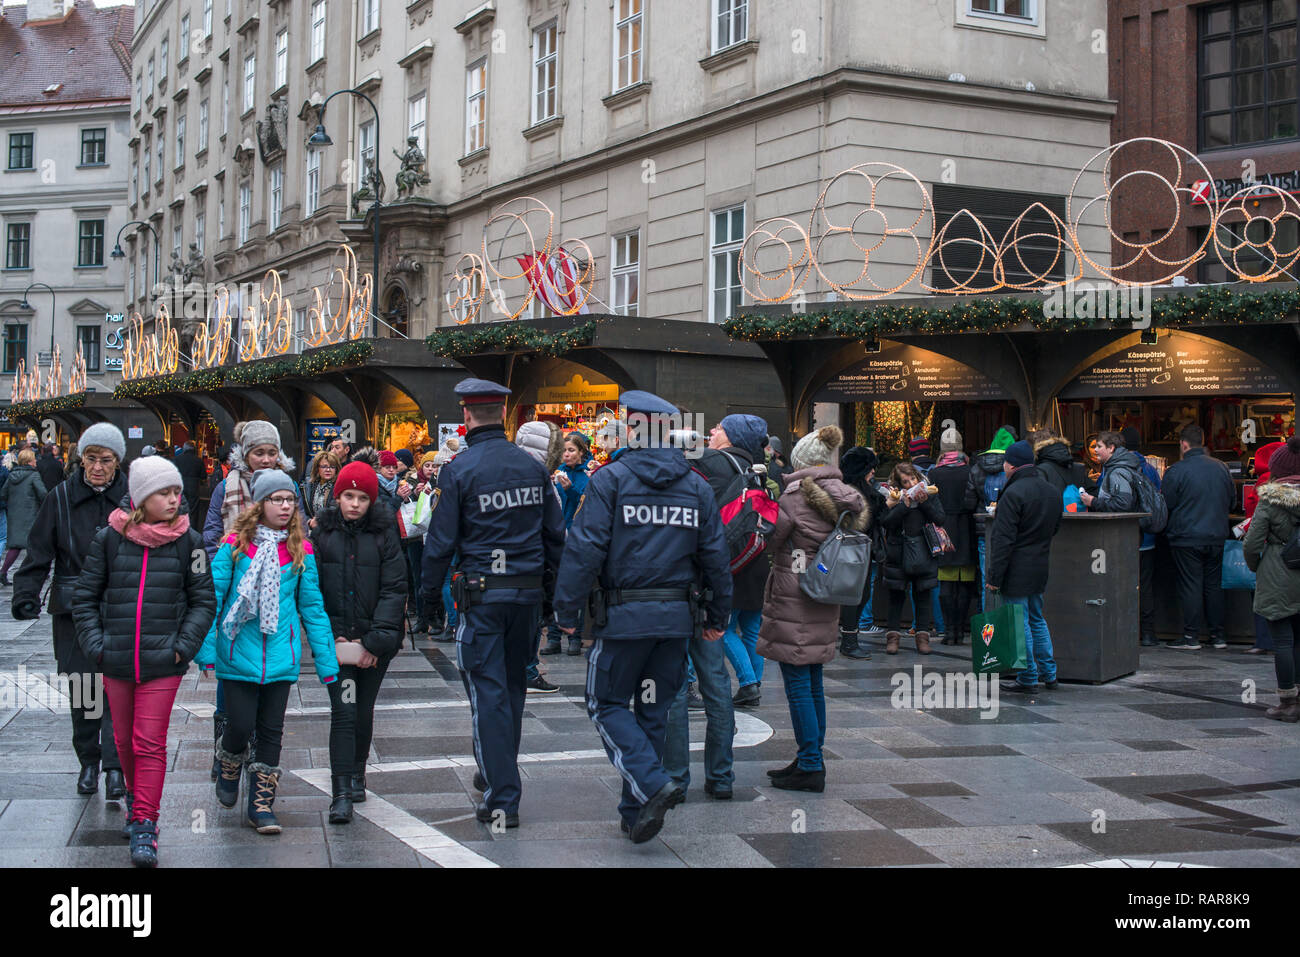 La policía austríaca caminar entre la multitud en el mercado navideño en la Plaza de San Esteban, Stephansplatz, Viena, Austria. Foto de stock